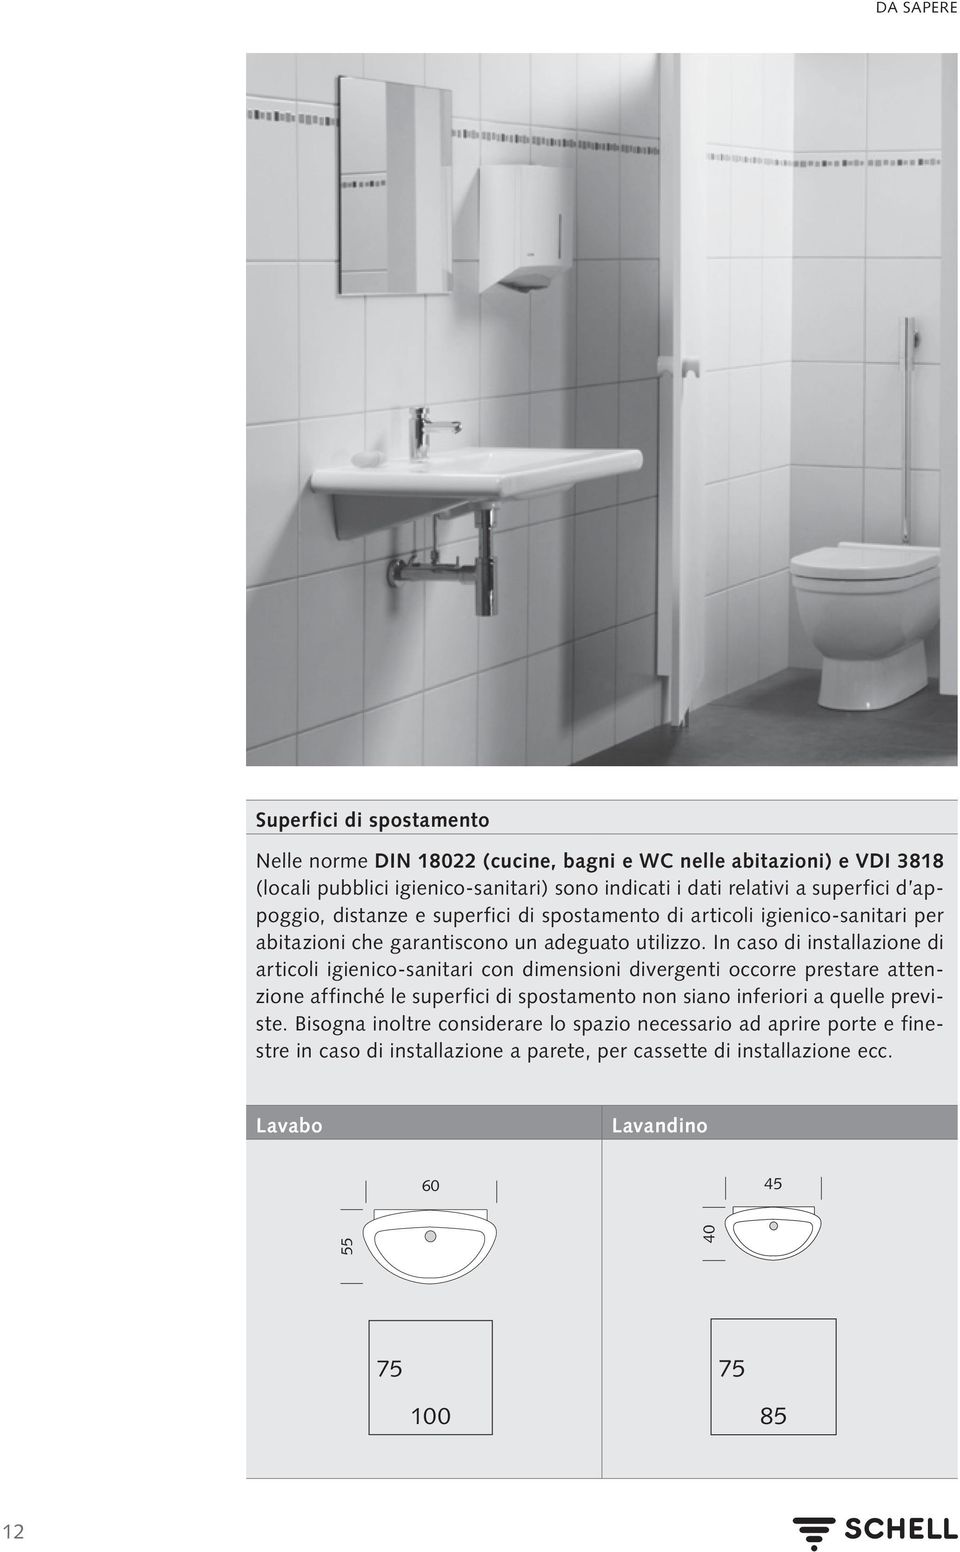 In caso di installazione di articoli igienico-sanitari con dimensioni divergenti occorre prestare attenzione affinché le superfici di spostamento non siano inferiori a